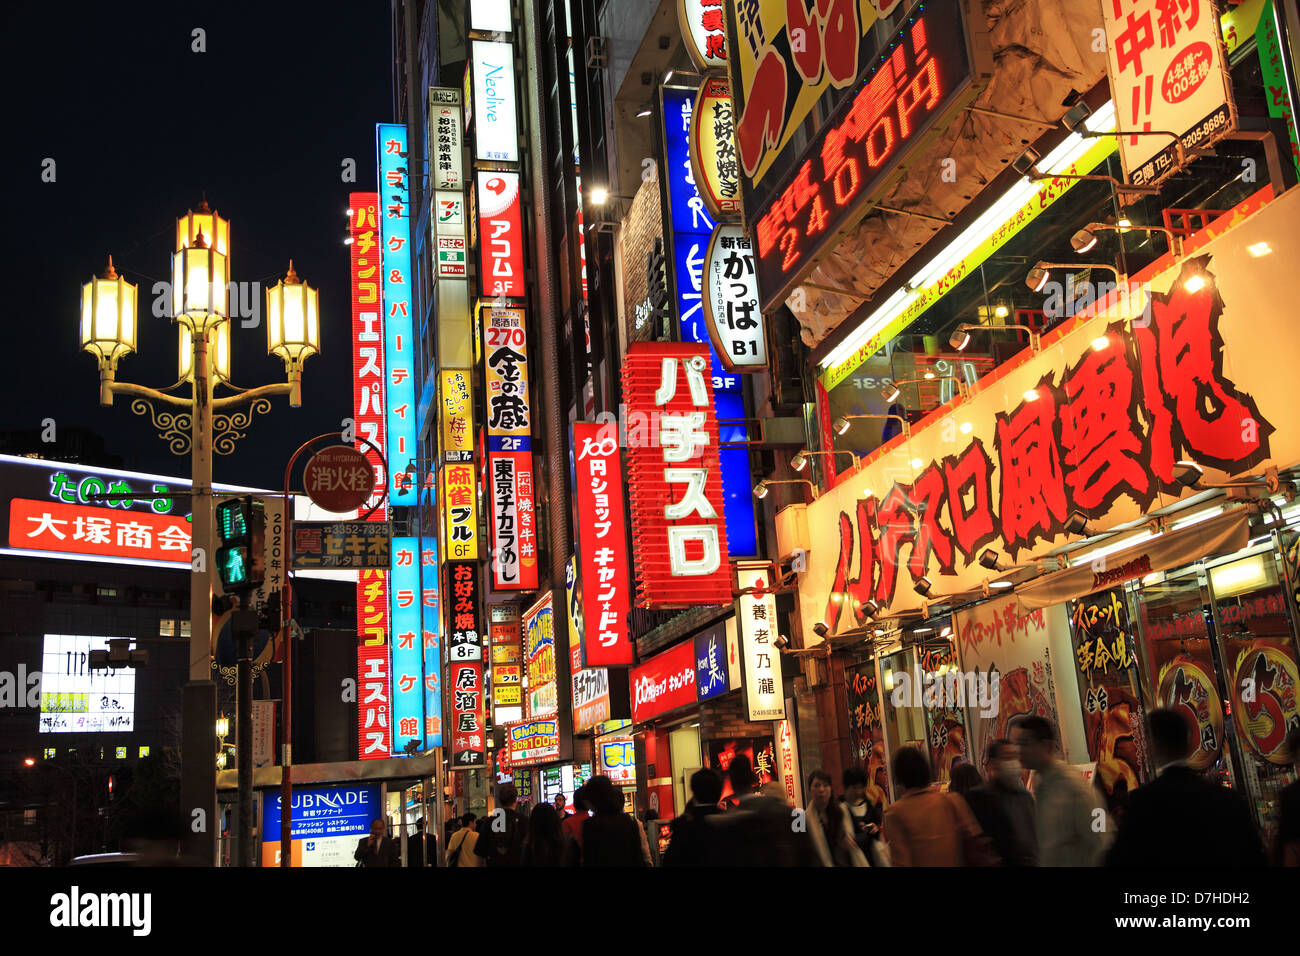 Japan, Tokyo, Shinjuku at night Stock Photo